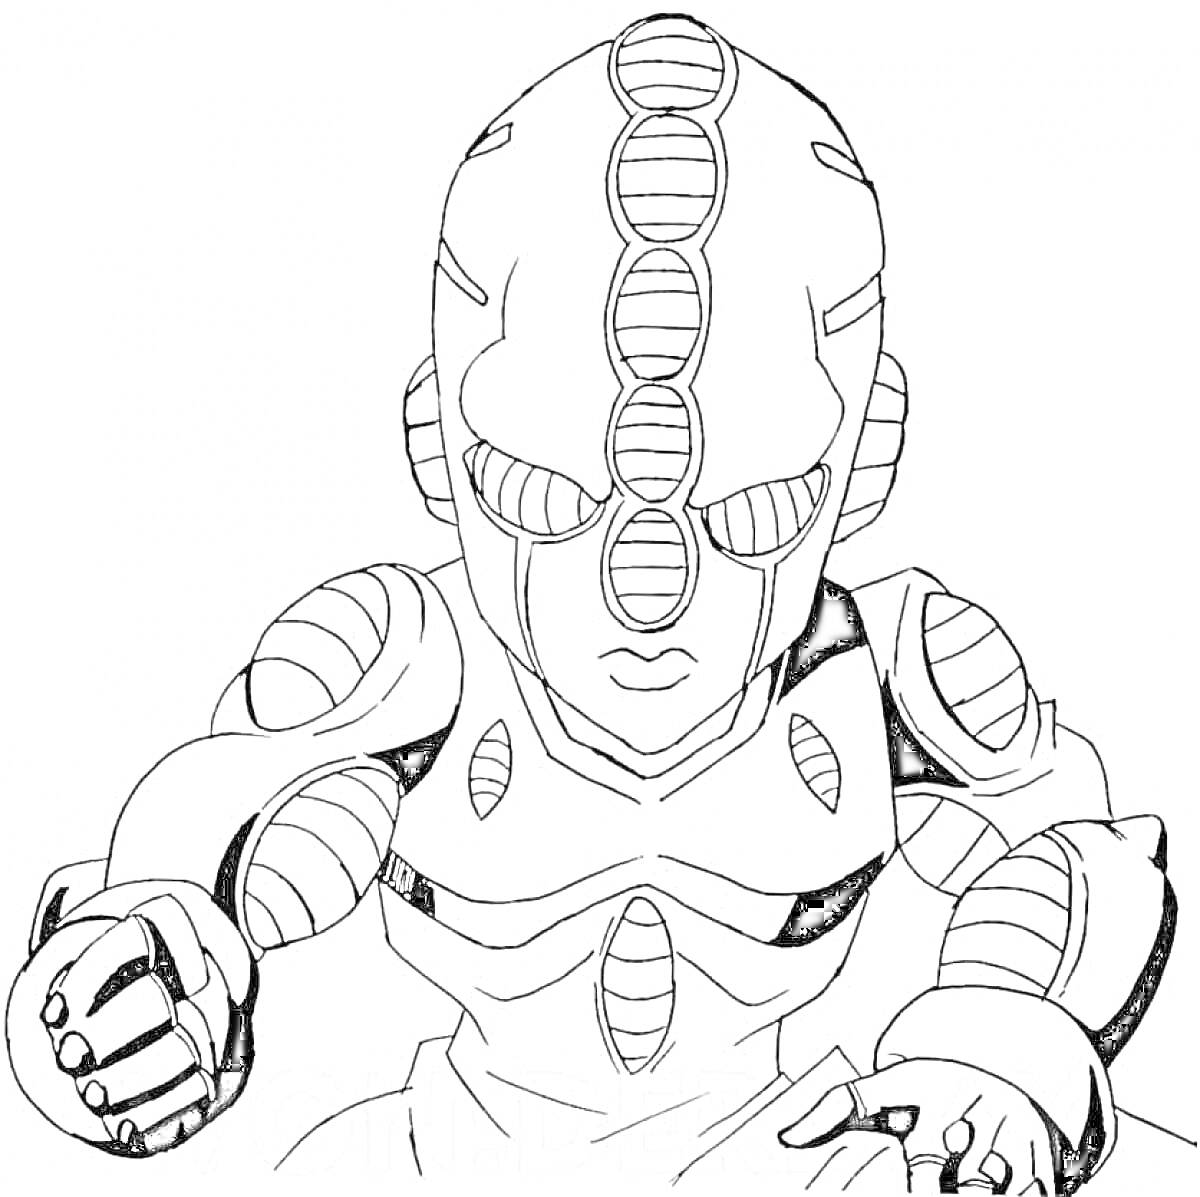 Раскраска Стенд из JoJo's Bizarre Adventure с круглыми элементами на теле, маской с круглыми узорами и поднятыми кулаками